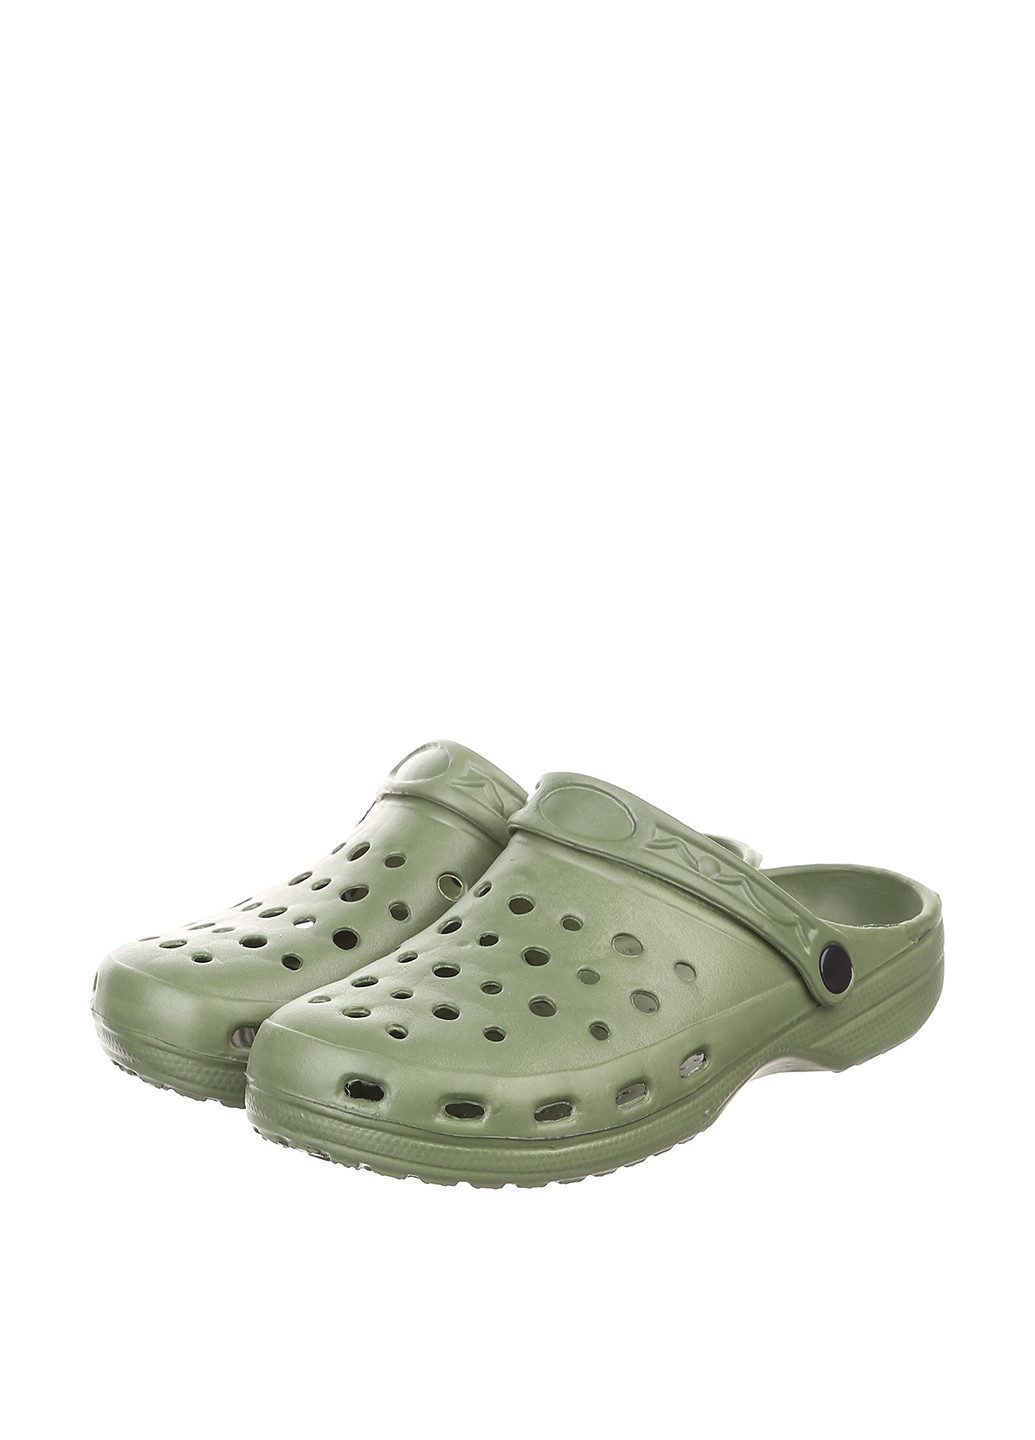 Хаки сабо Crocs